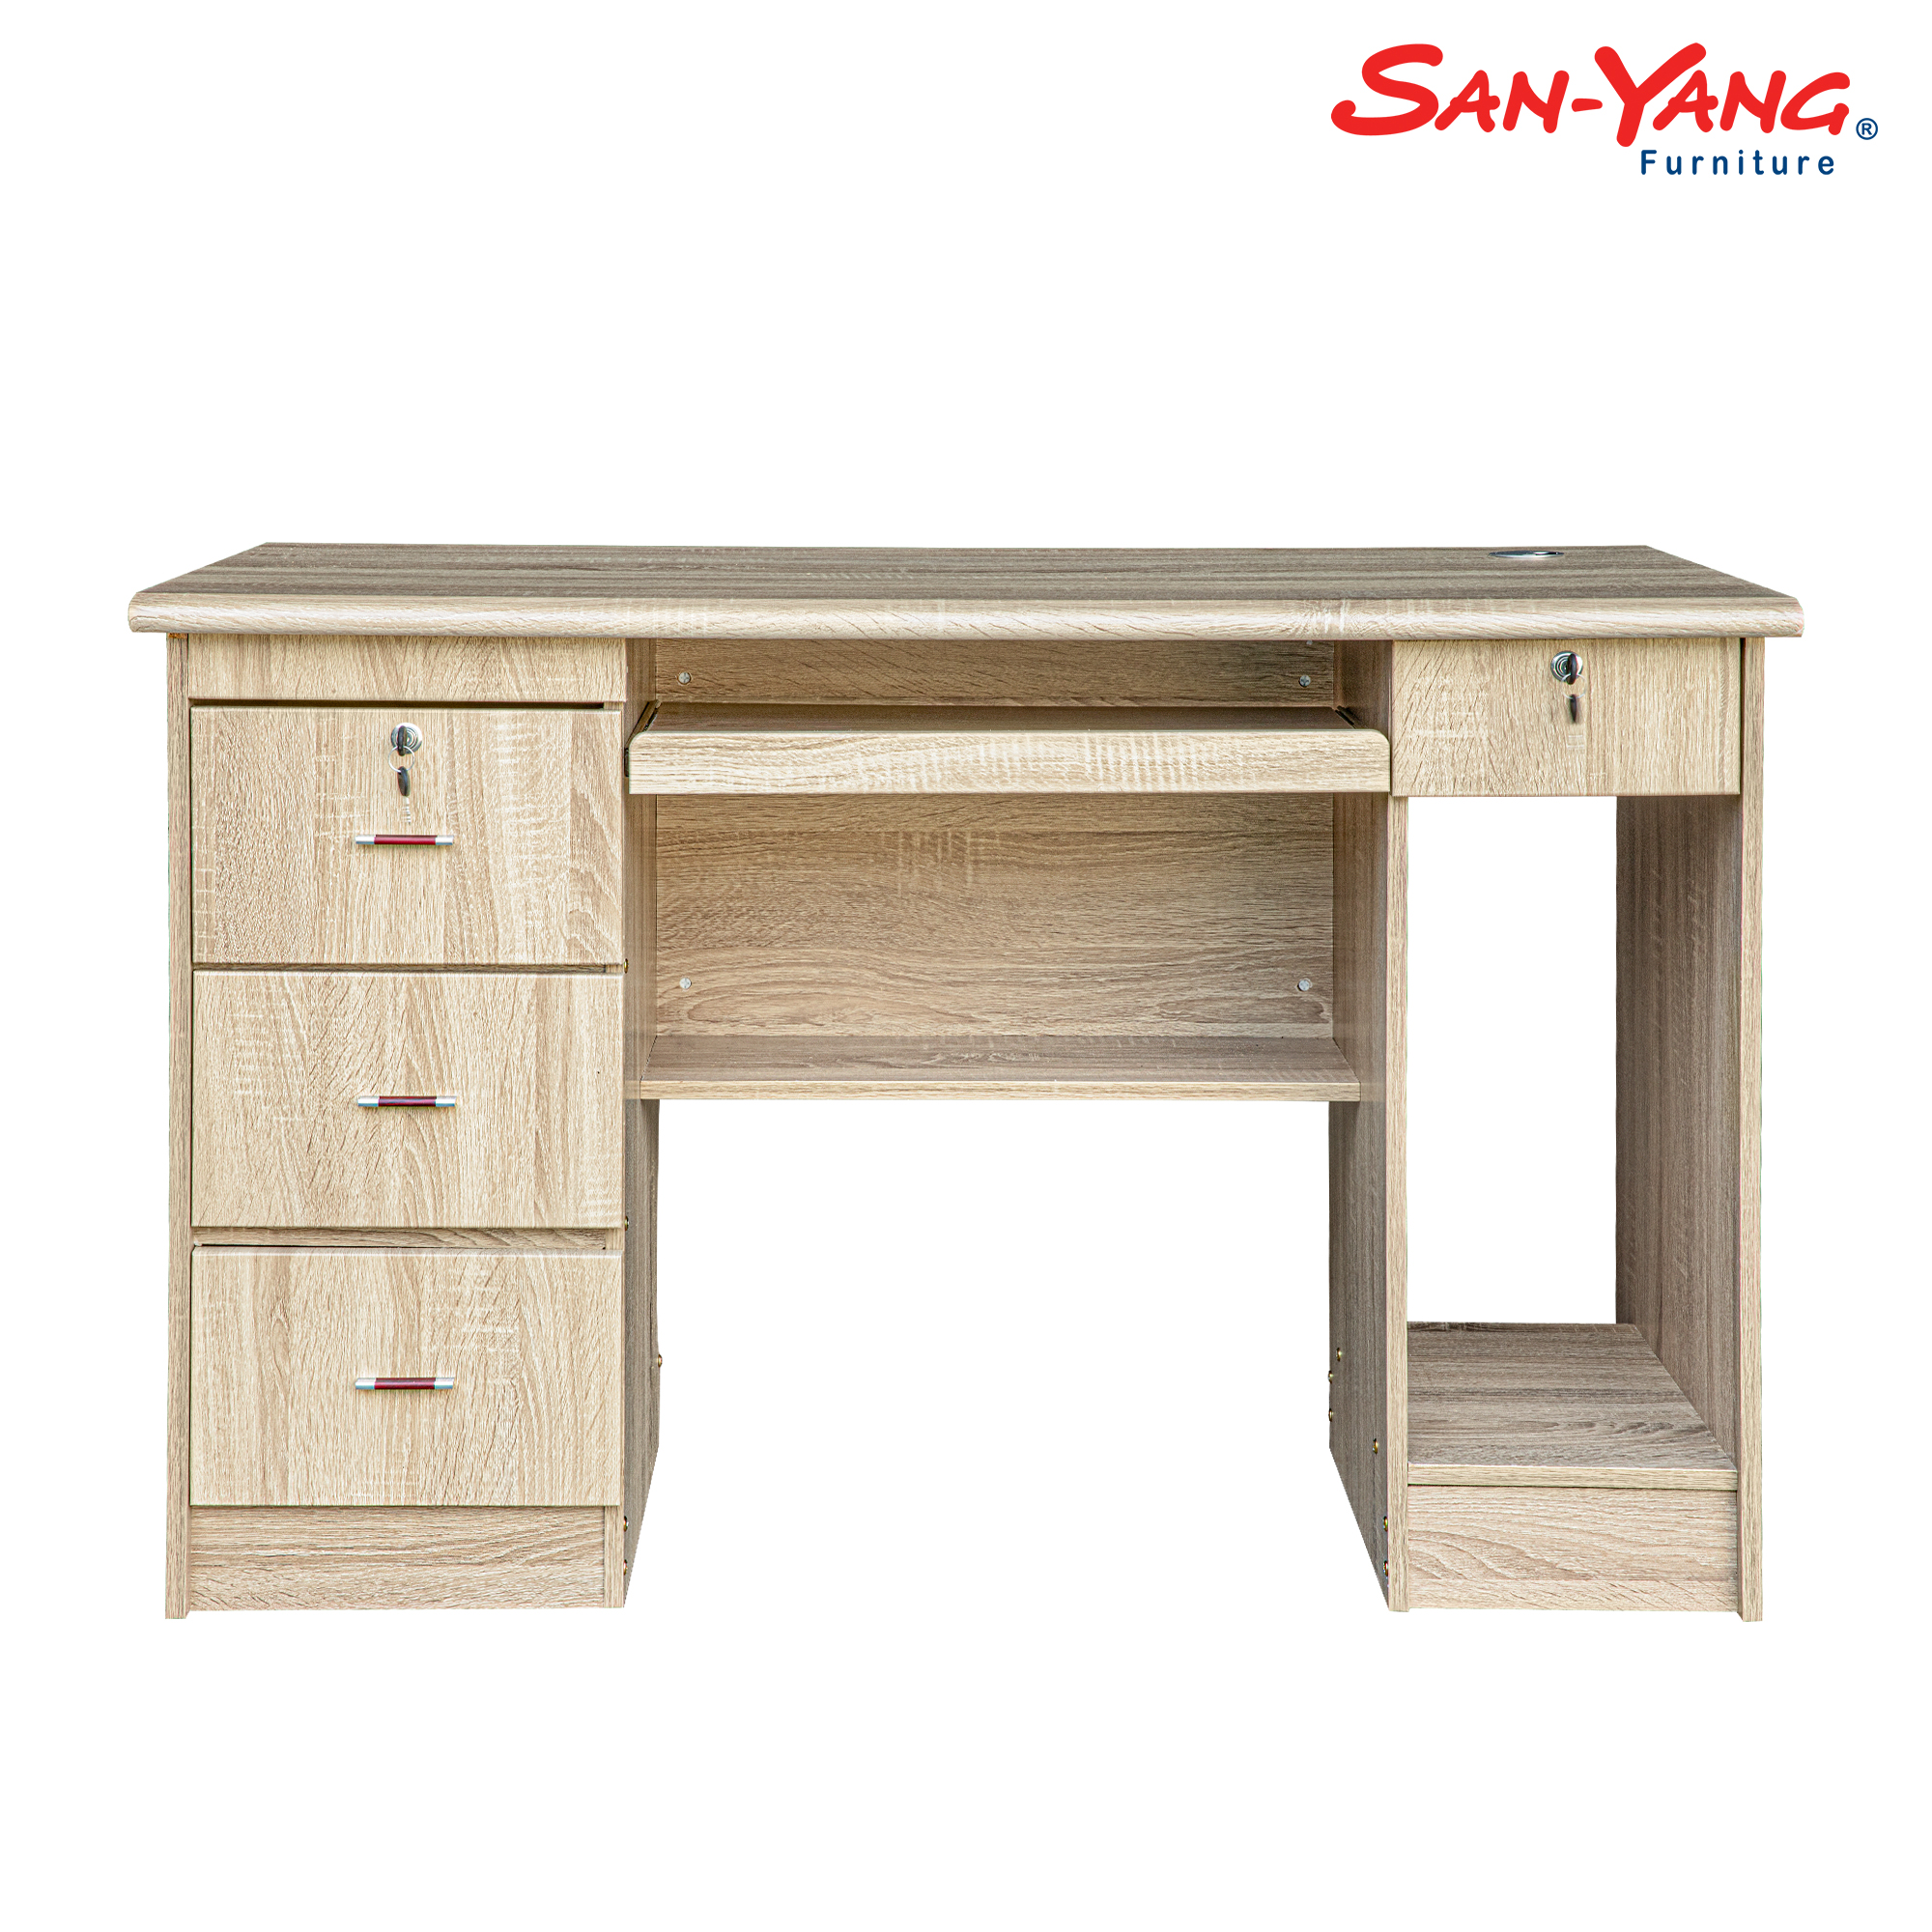 Computer Table 405317 - Sanyang